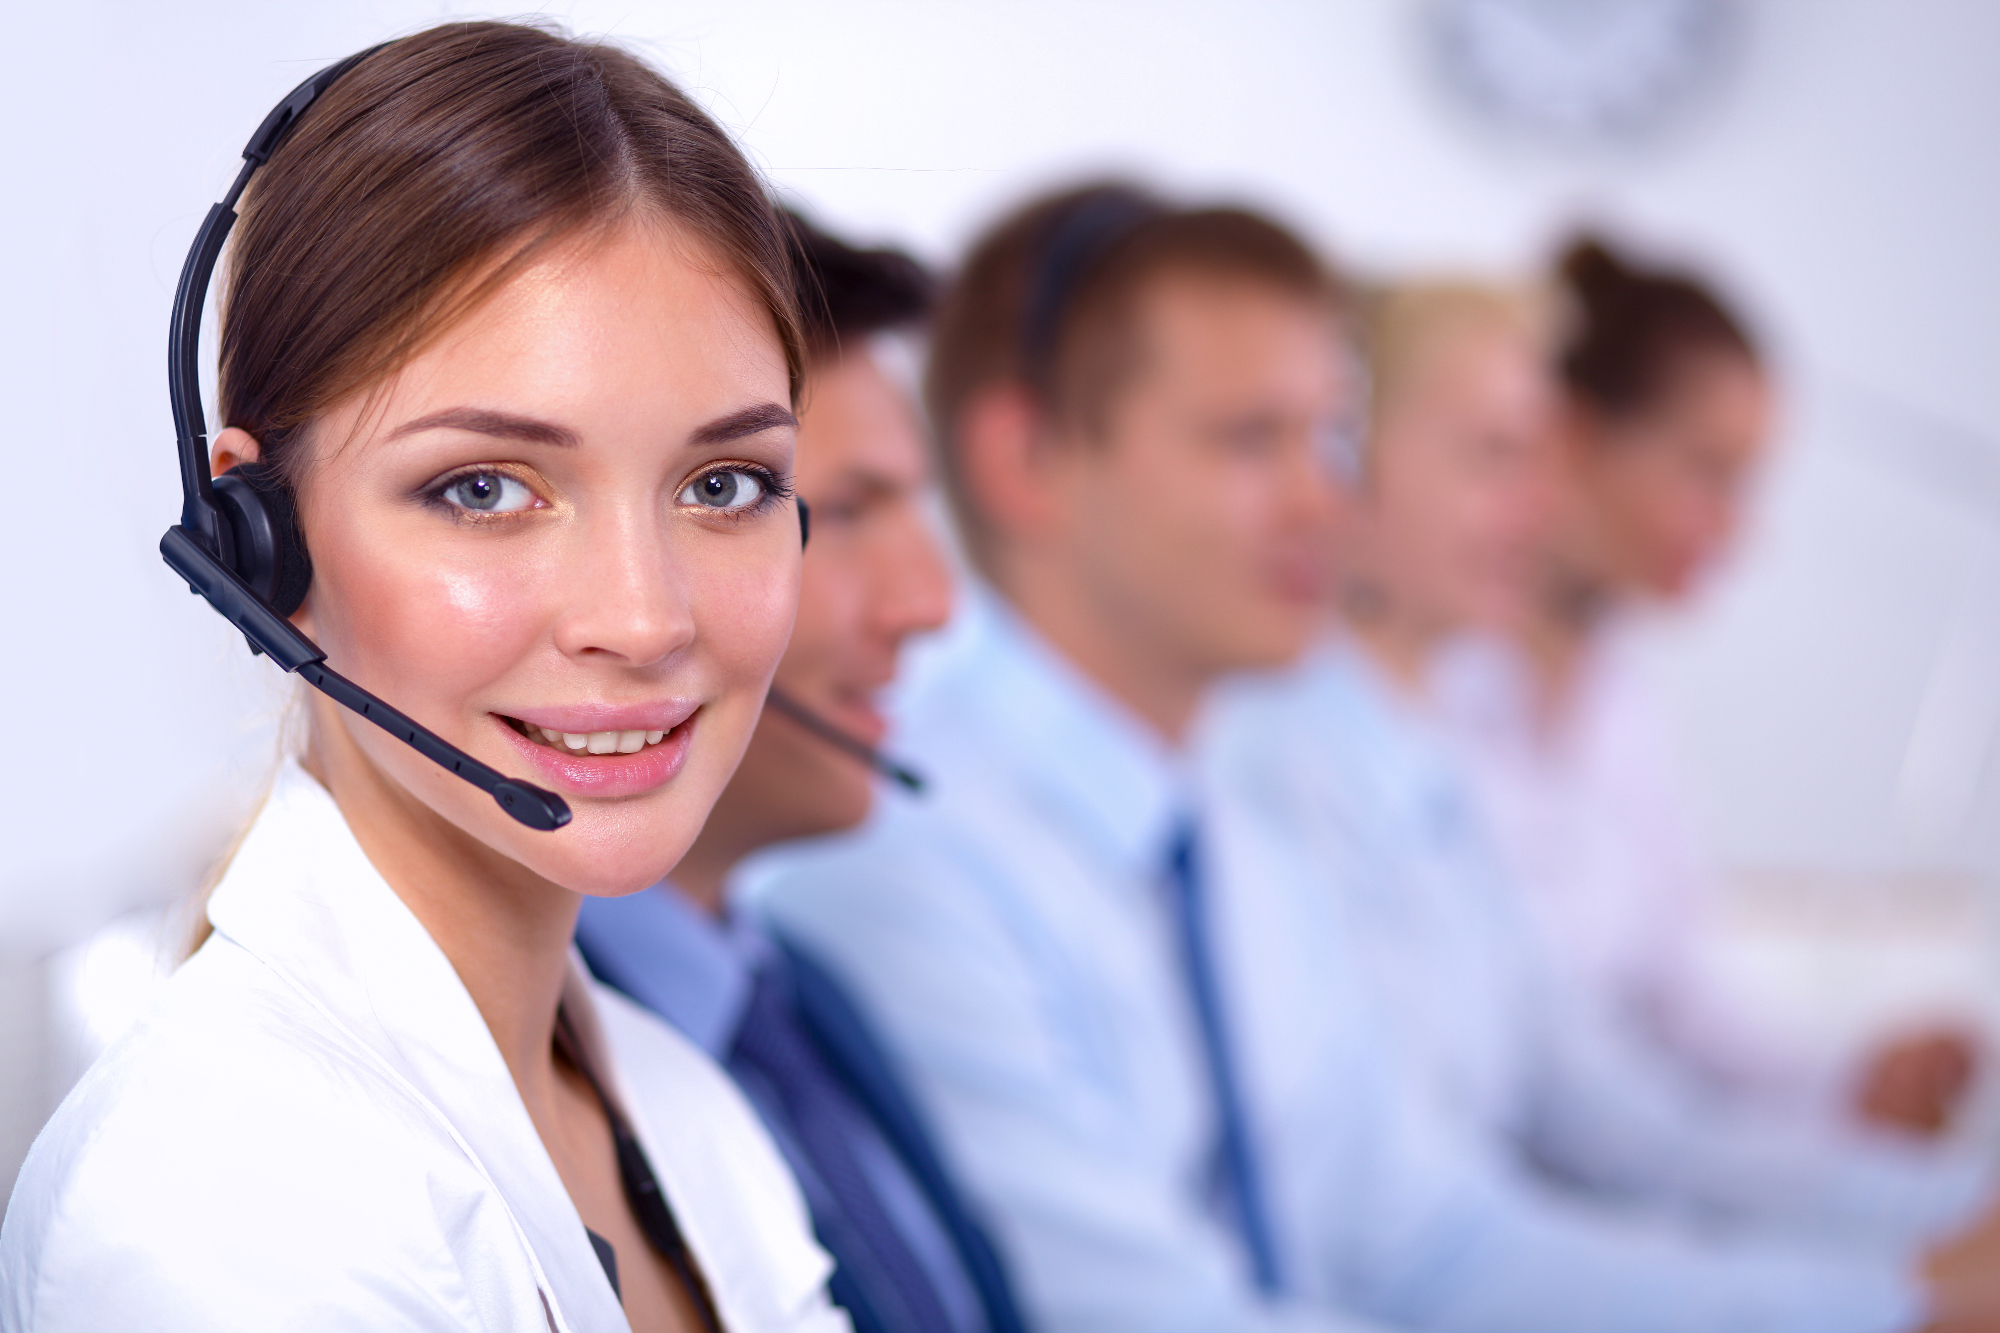 Razumijevanje uloge i važnosti call centara u pružanju usluga